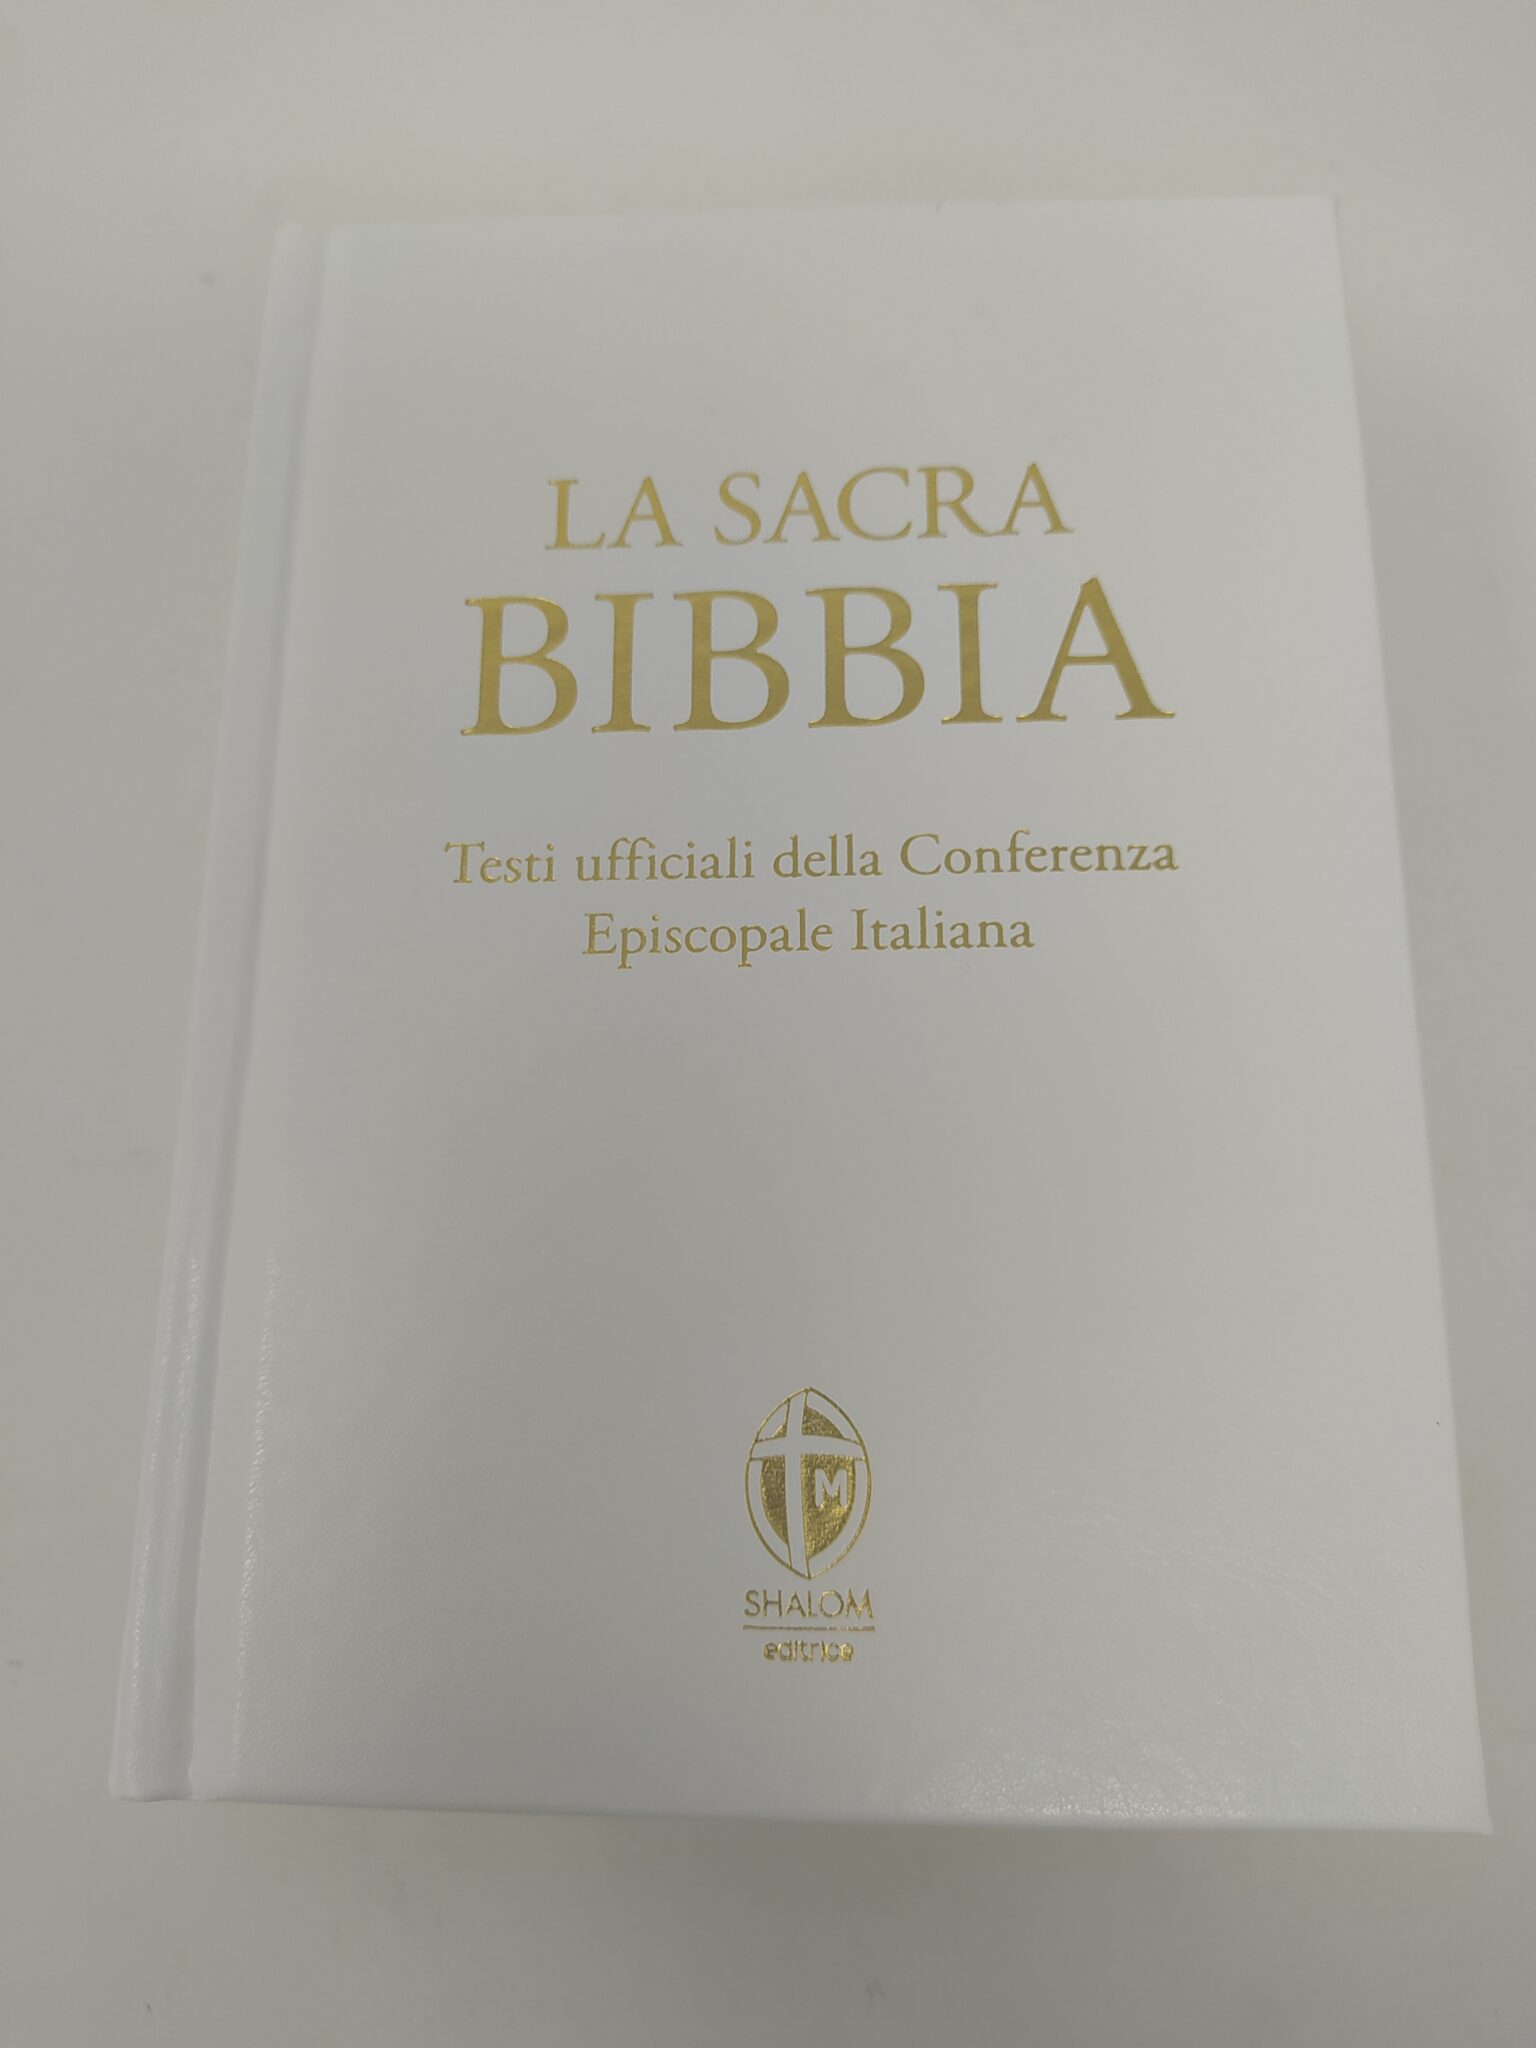 la sacra Bibbia, testi ufficiali della Conferenza Episcopale Italiana  20x14x8 copertina finta pelle rigida - Arte Sacra Candotti